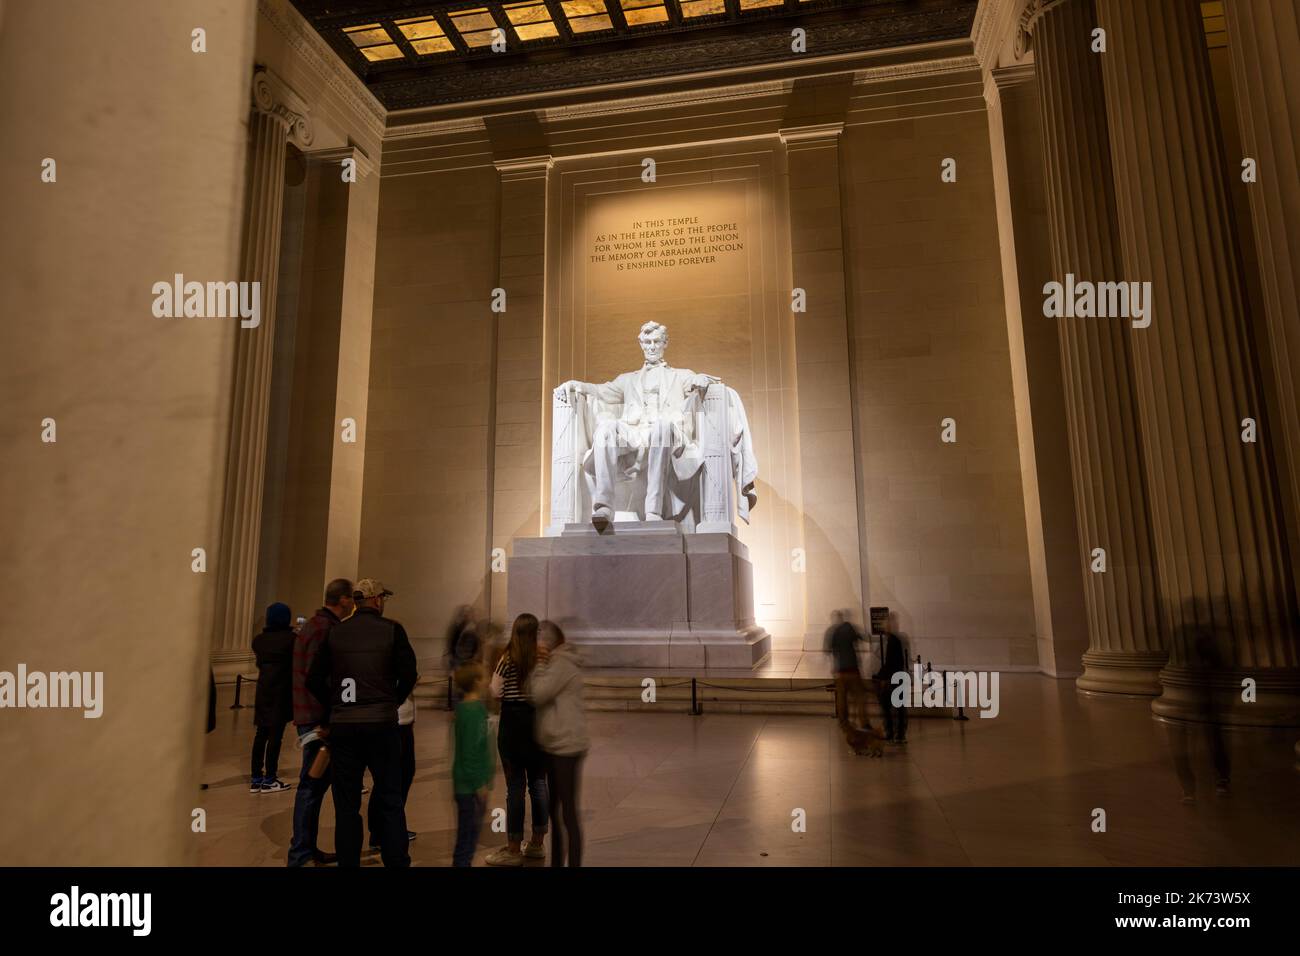 Los turistas visitan el Lincoln Memorial en Washington, D.C. por la noche en una noche de invierno. Una larga exposición muestra gente borrosa debajo de la impresionante estatua Foto de stock